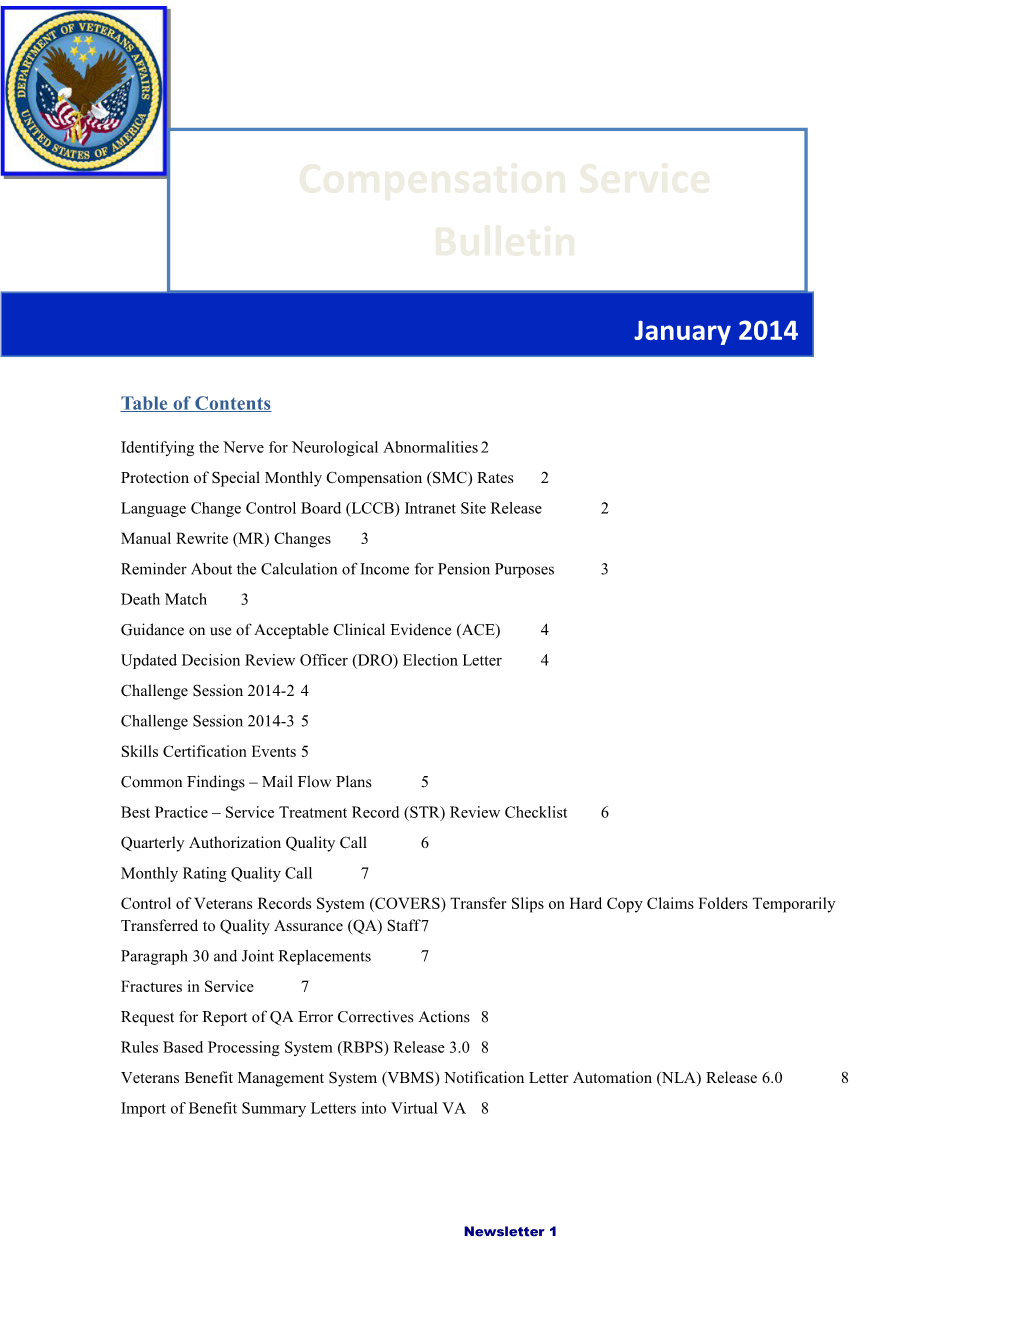 Compensation Service Bulletin January 2014